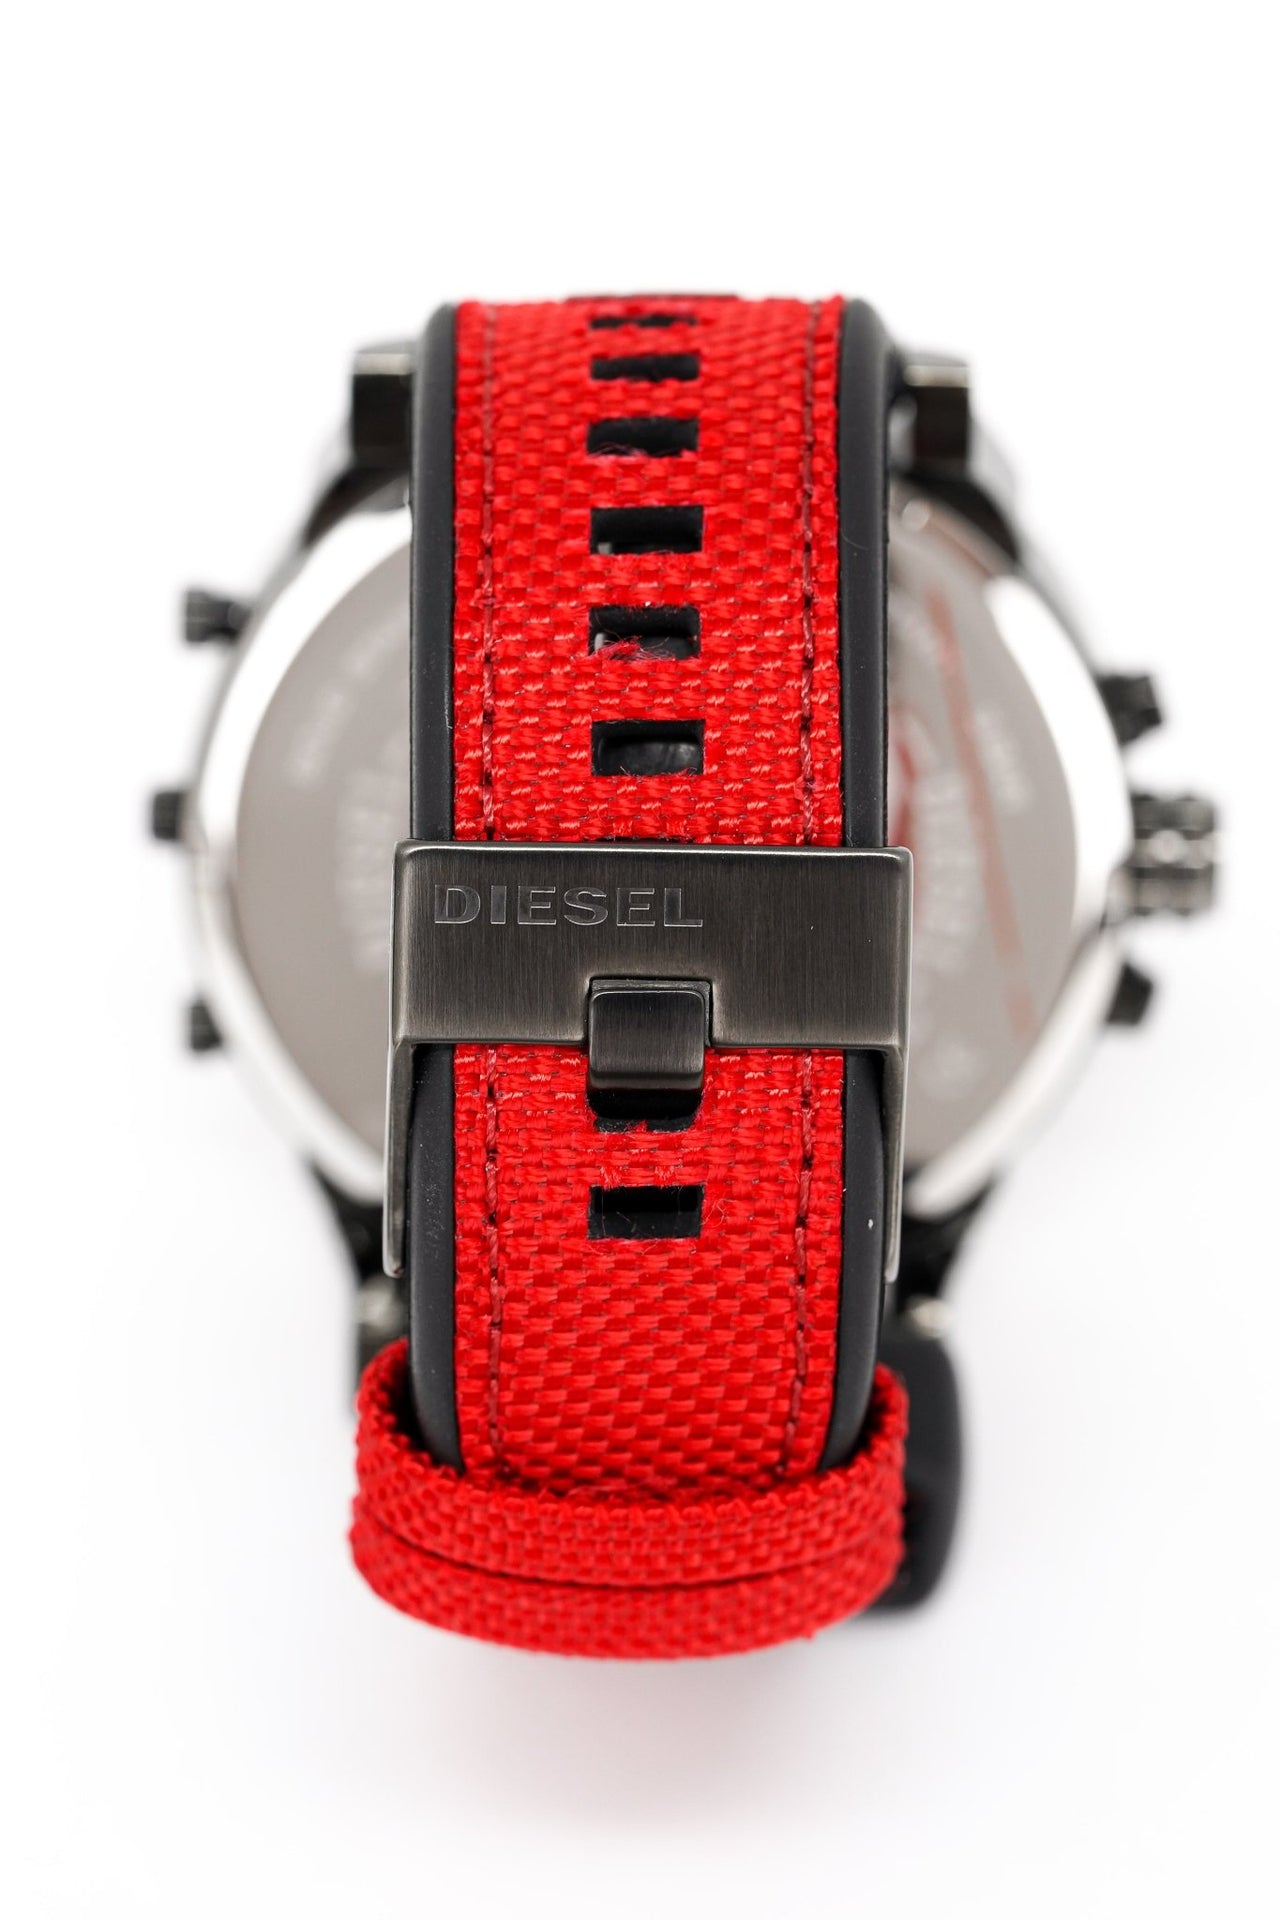 Diesel Men's Chronograph Watch Mr Daddy 2.0 Red DZ7423 - Watches & Crystals